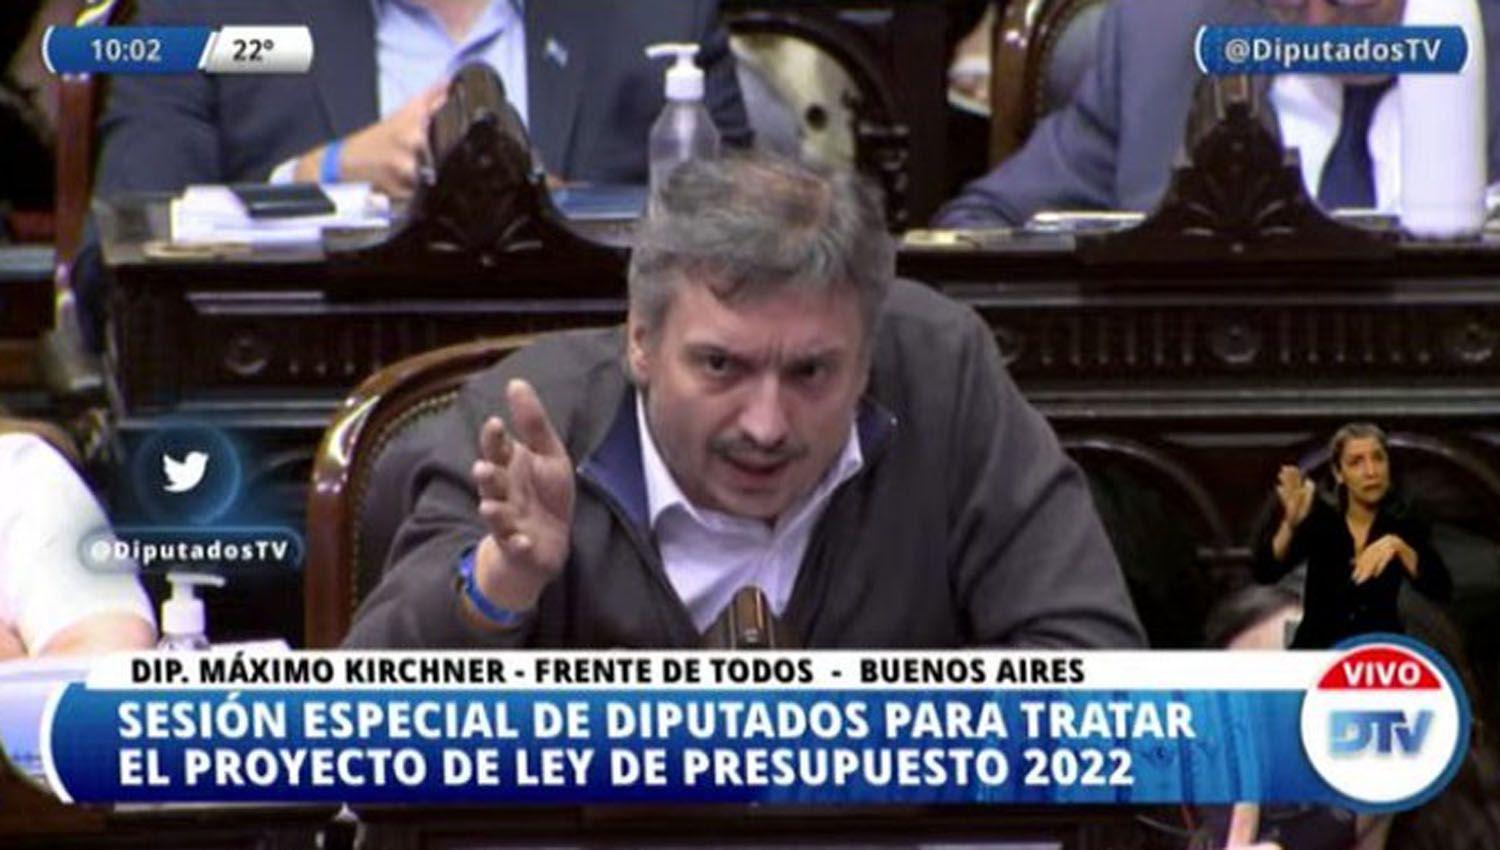 VIDEOS  El fuerte mensaje de Maacuteximo Kirchner que derivoacute en la caiacuteda de la negociacioacuten en Diputados